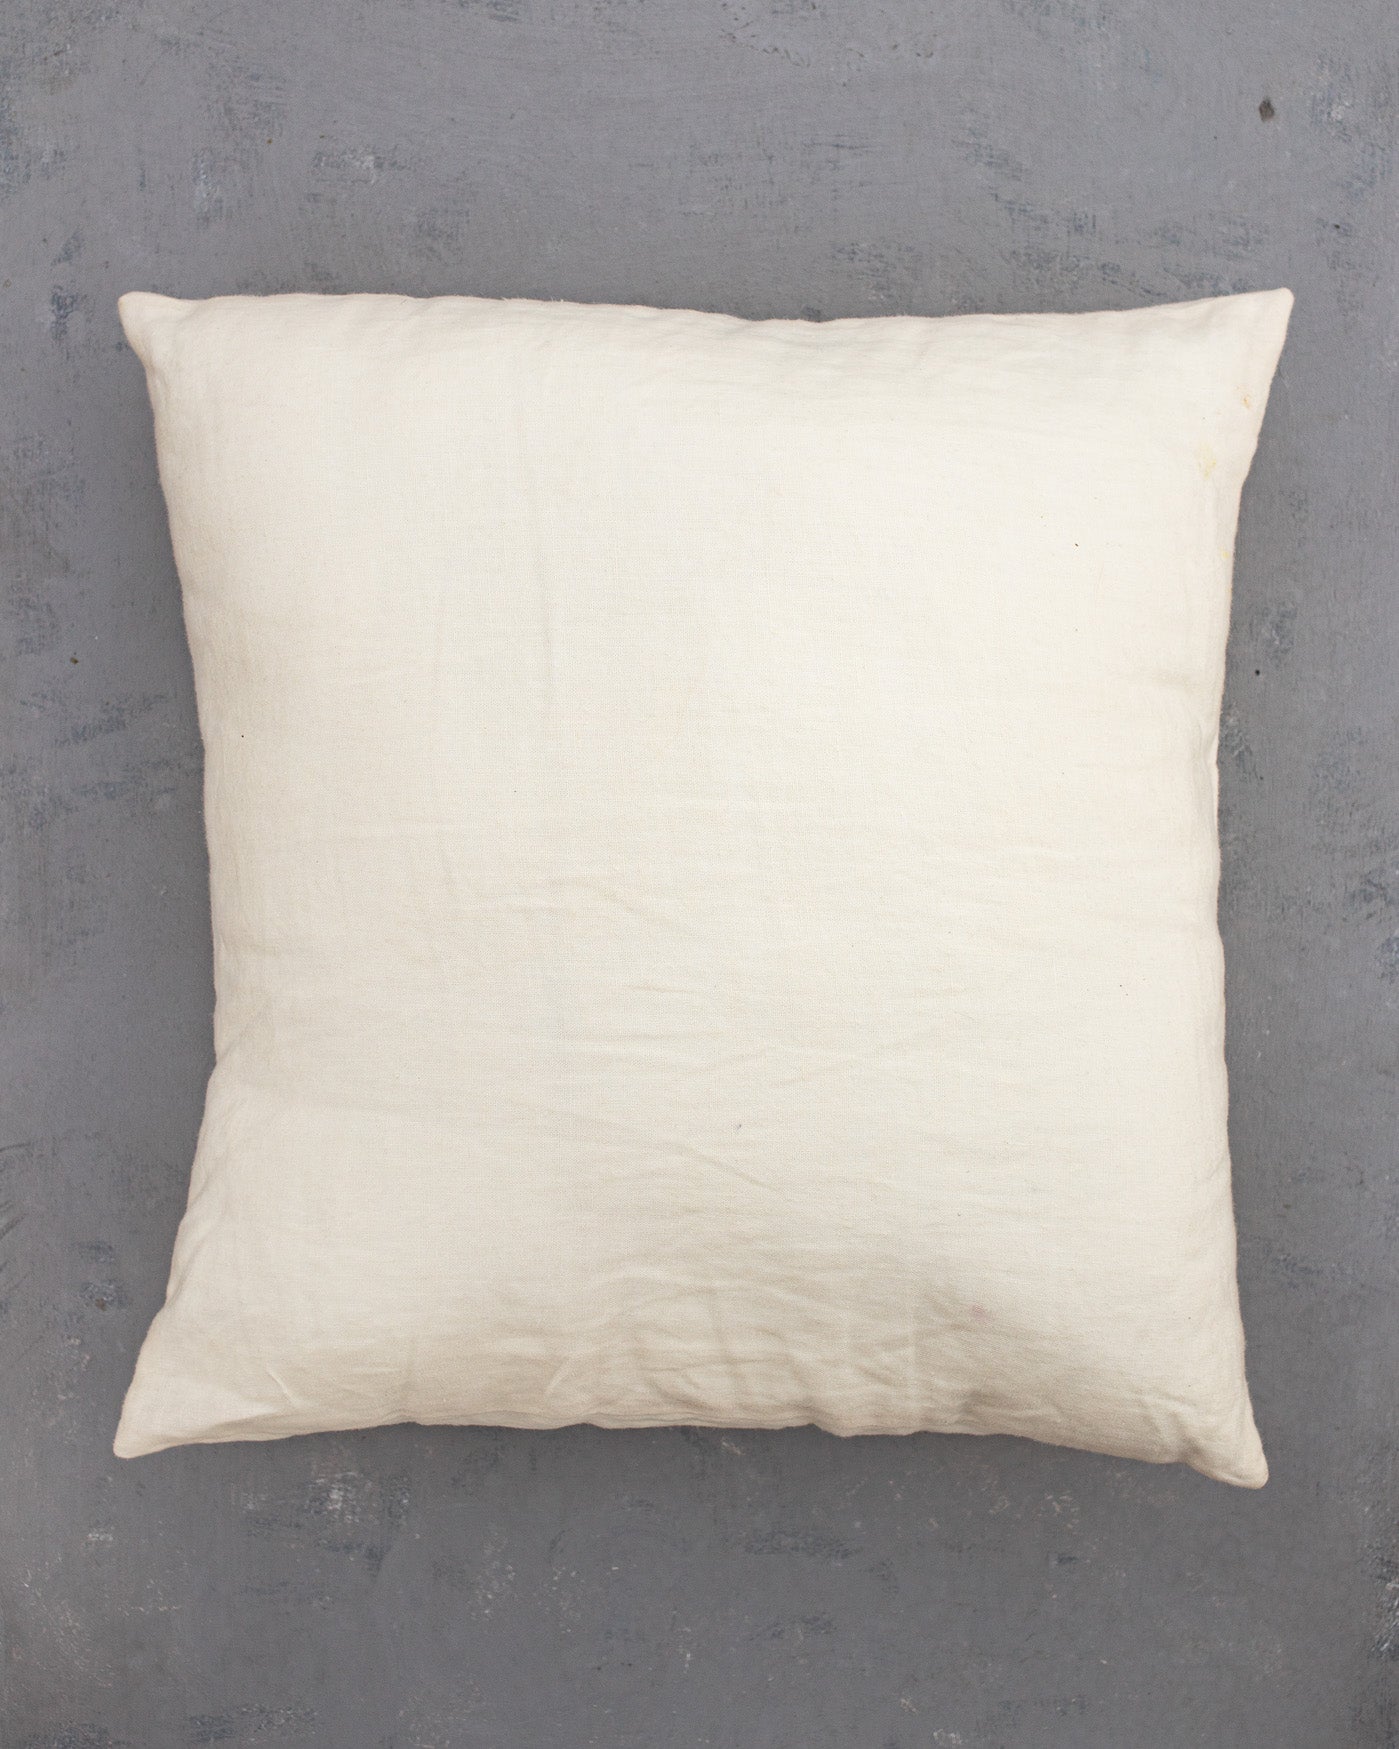 Hemp Throw Pillow with Cover Filled HEMP Fiber filler in Soft